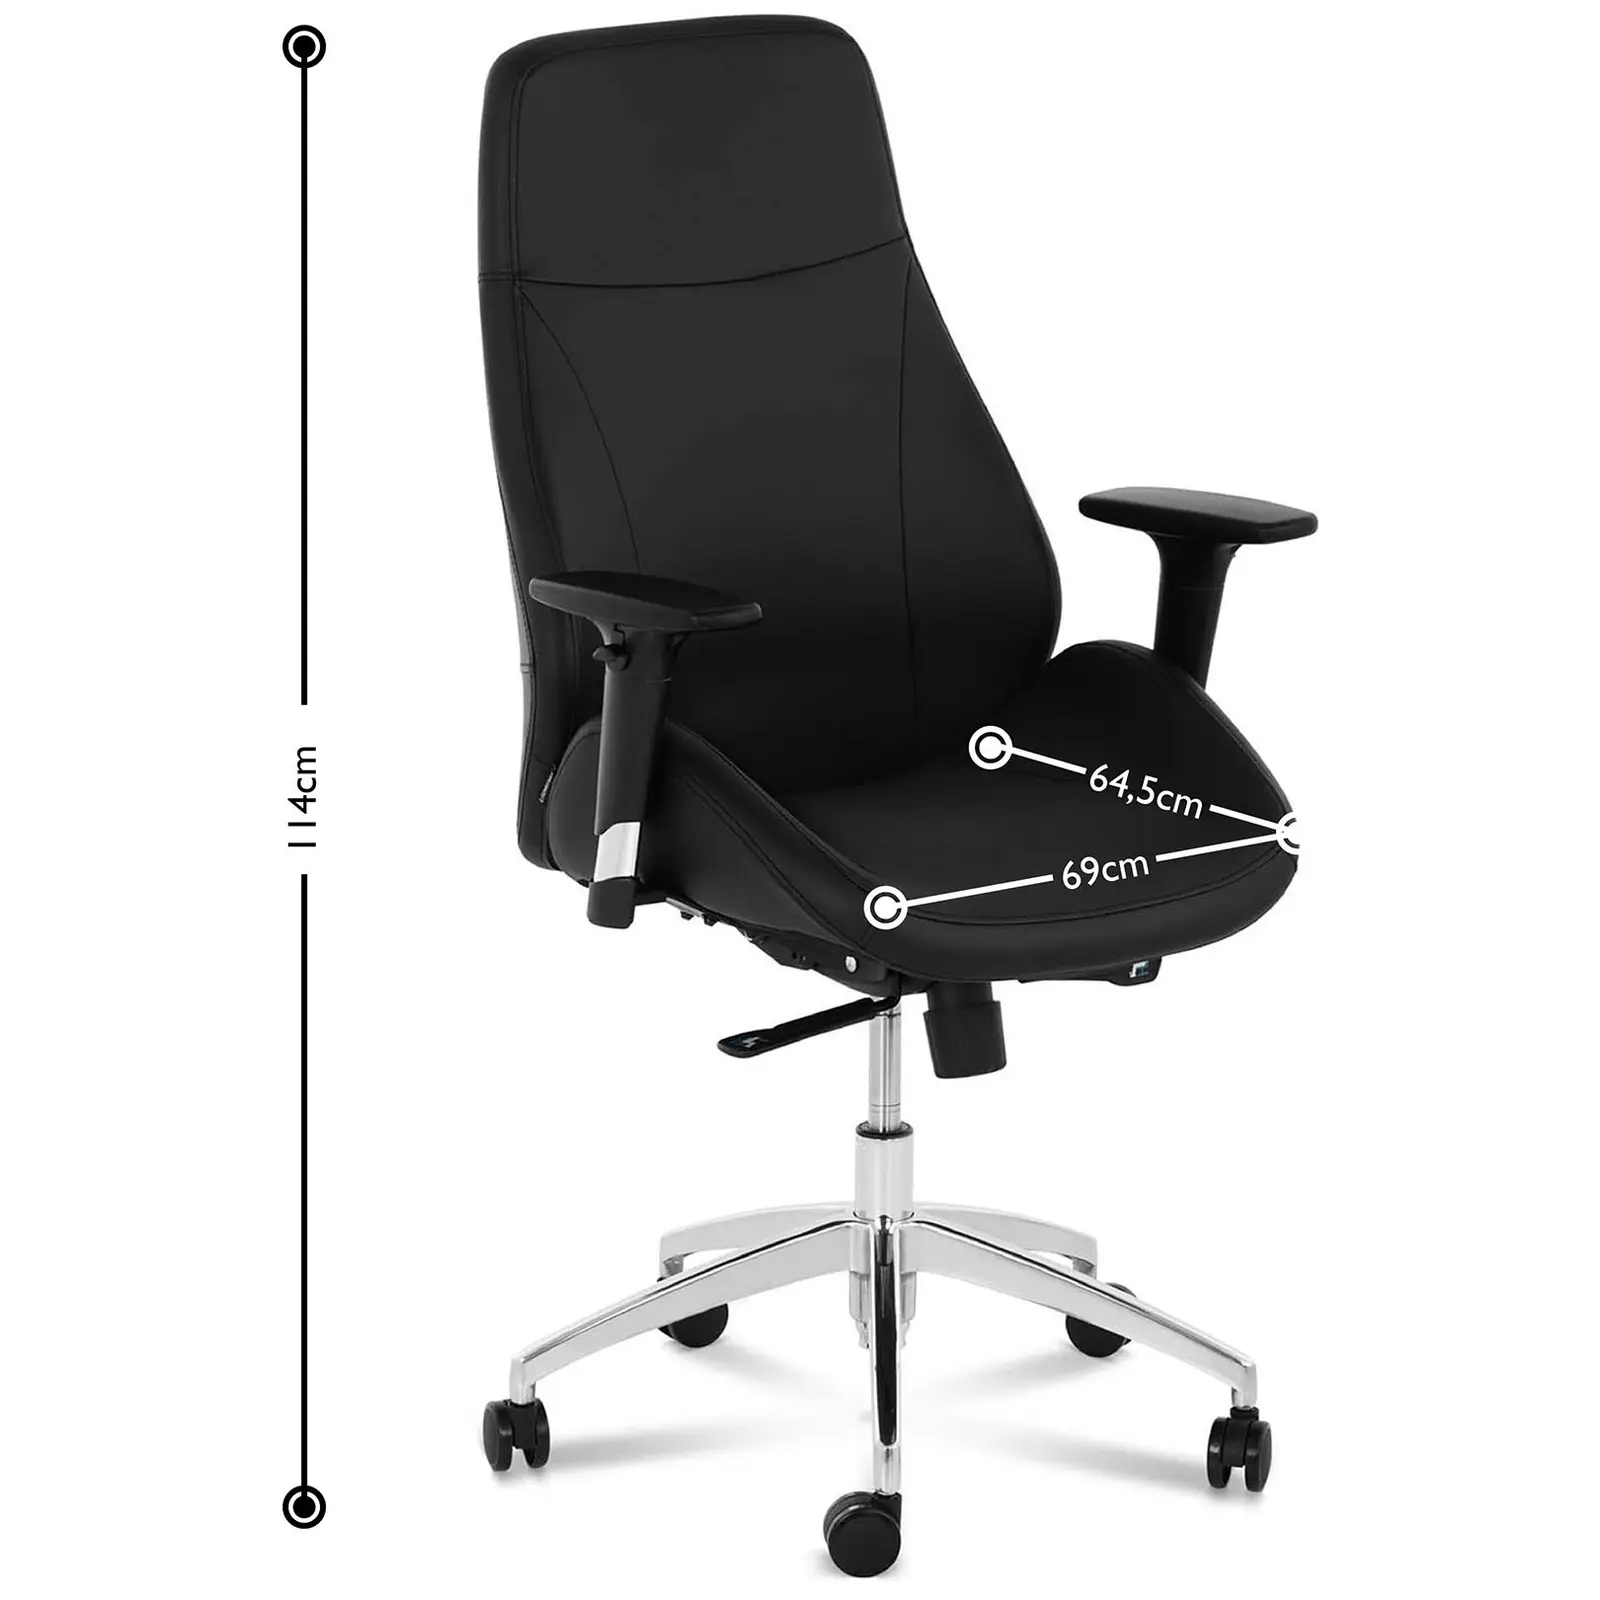 B-Ware Bürostuhl - Chefsessel - Kunstleder - Chrom - 150 kg